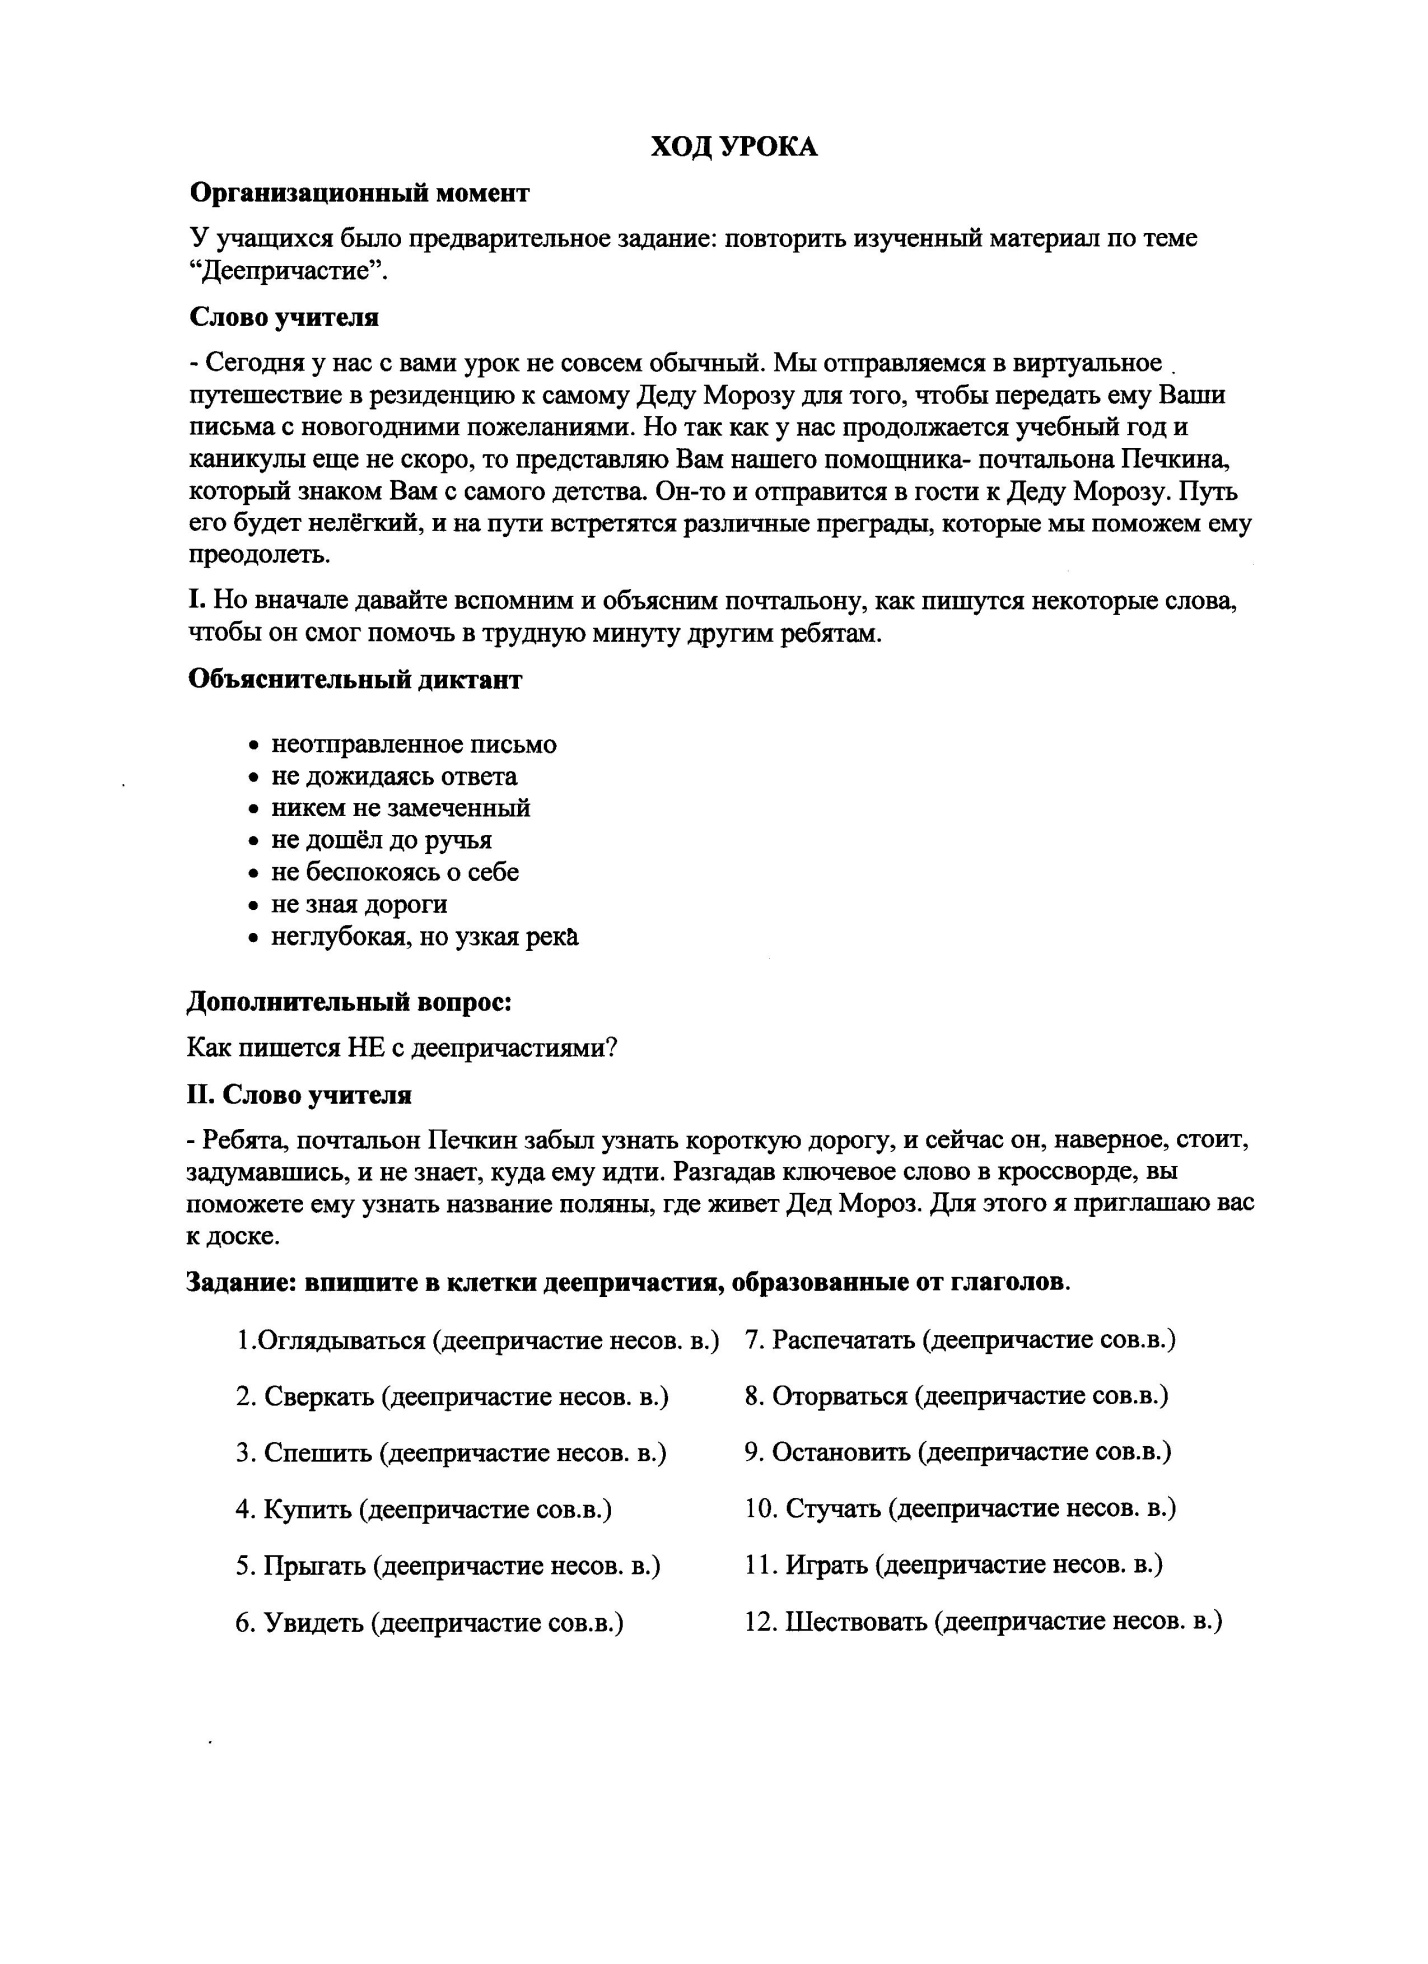 Открытый урок по русскому языку в 7-м классе по теме Деепричастие